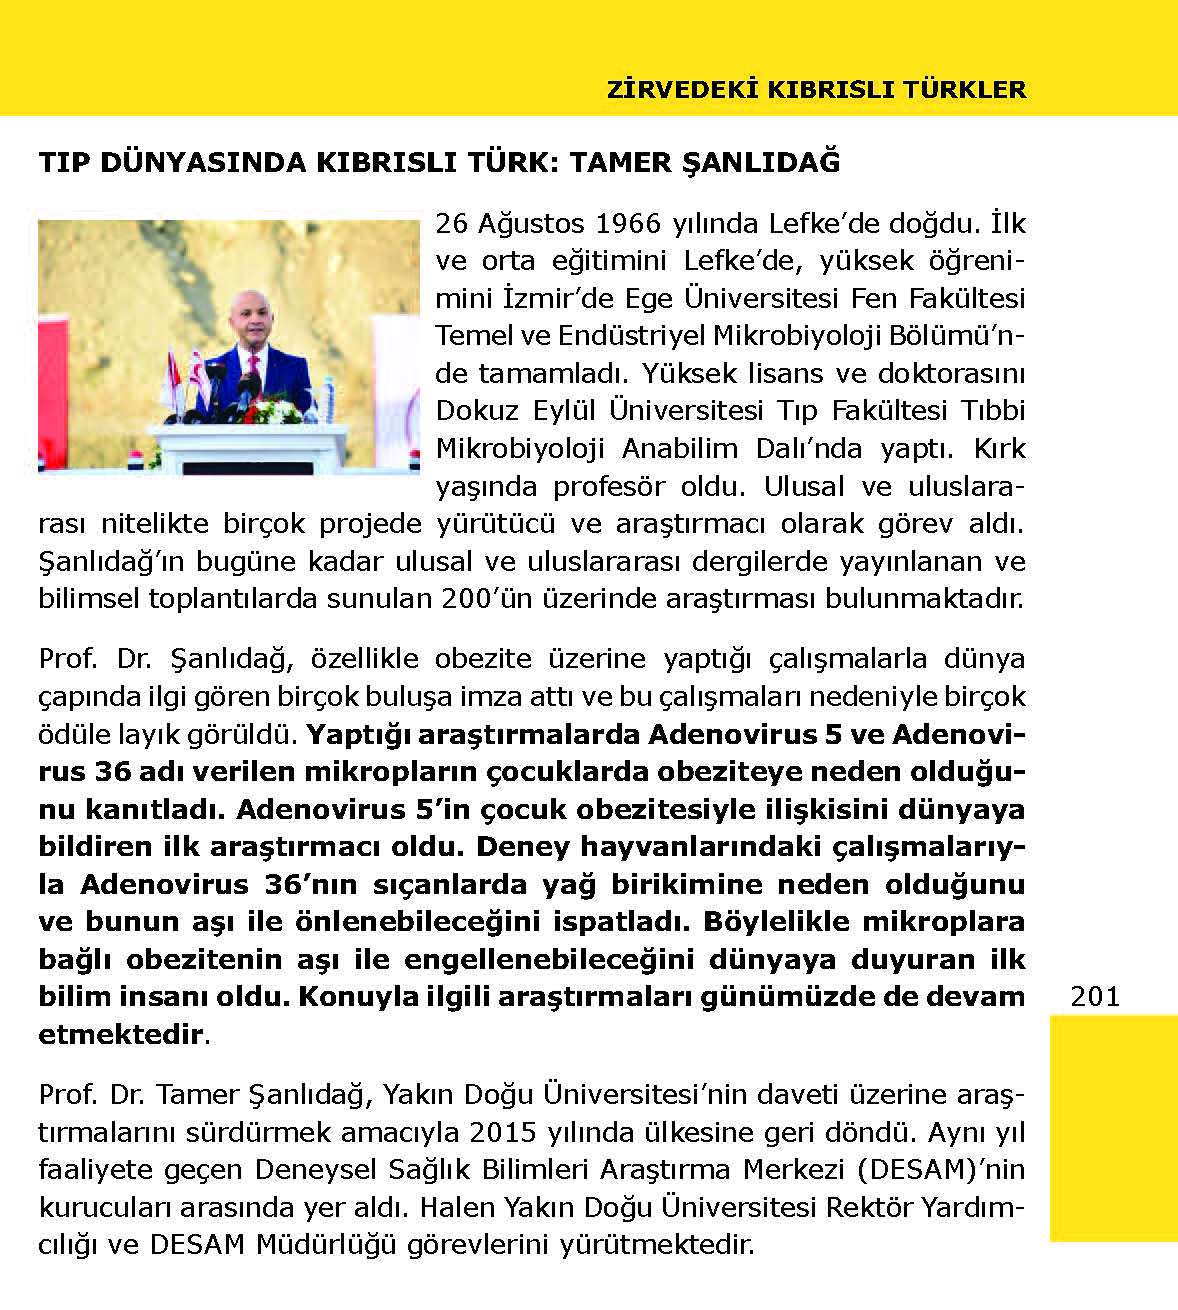 Yakın Doğu Üniversitesi Rektör Yardımcısı Prof. Dr. Tamer Şanlıdağ, Teknoloji ve Tasarım Kitabında “Zirvedeki Kıbrıslı Türkler” Arasında Yer Aldı…